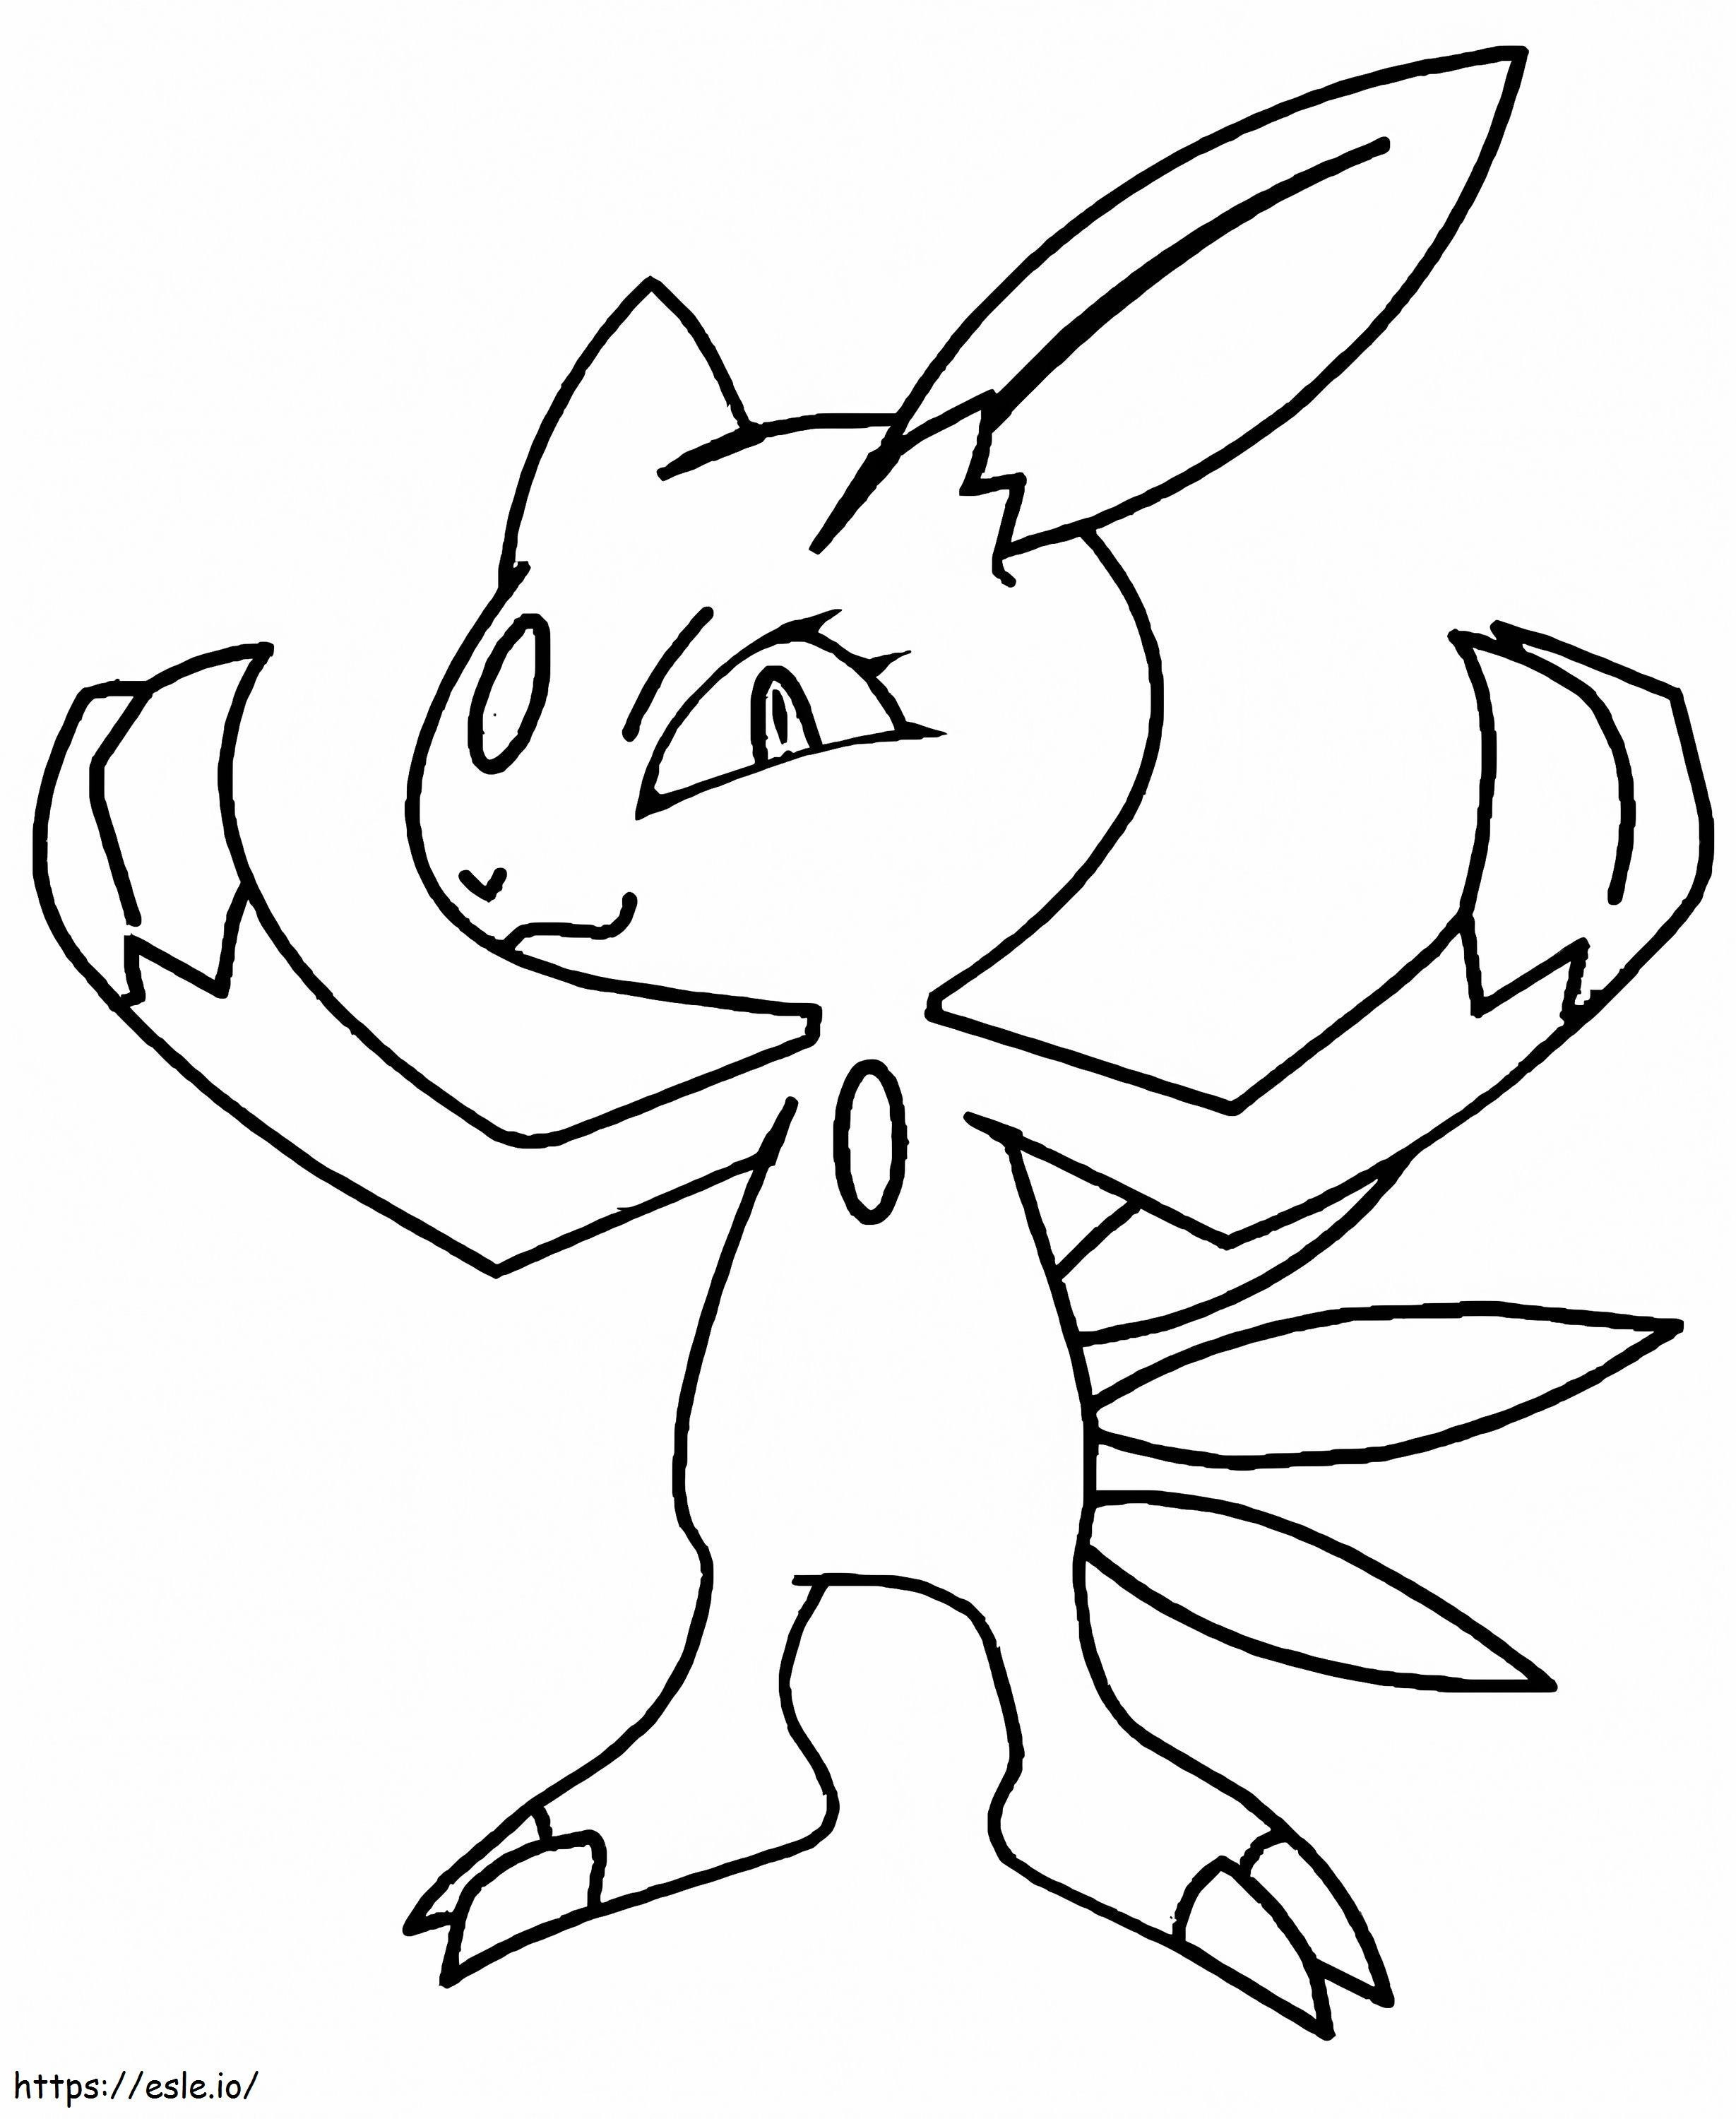 Coloriage Pokémon Sneasel 1 à imprimer dessin